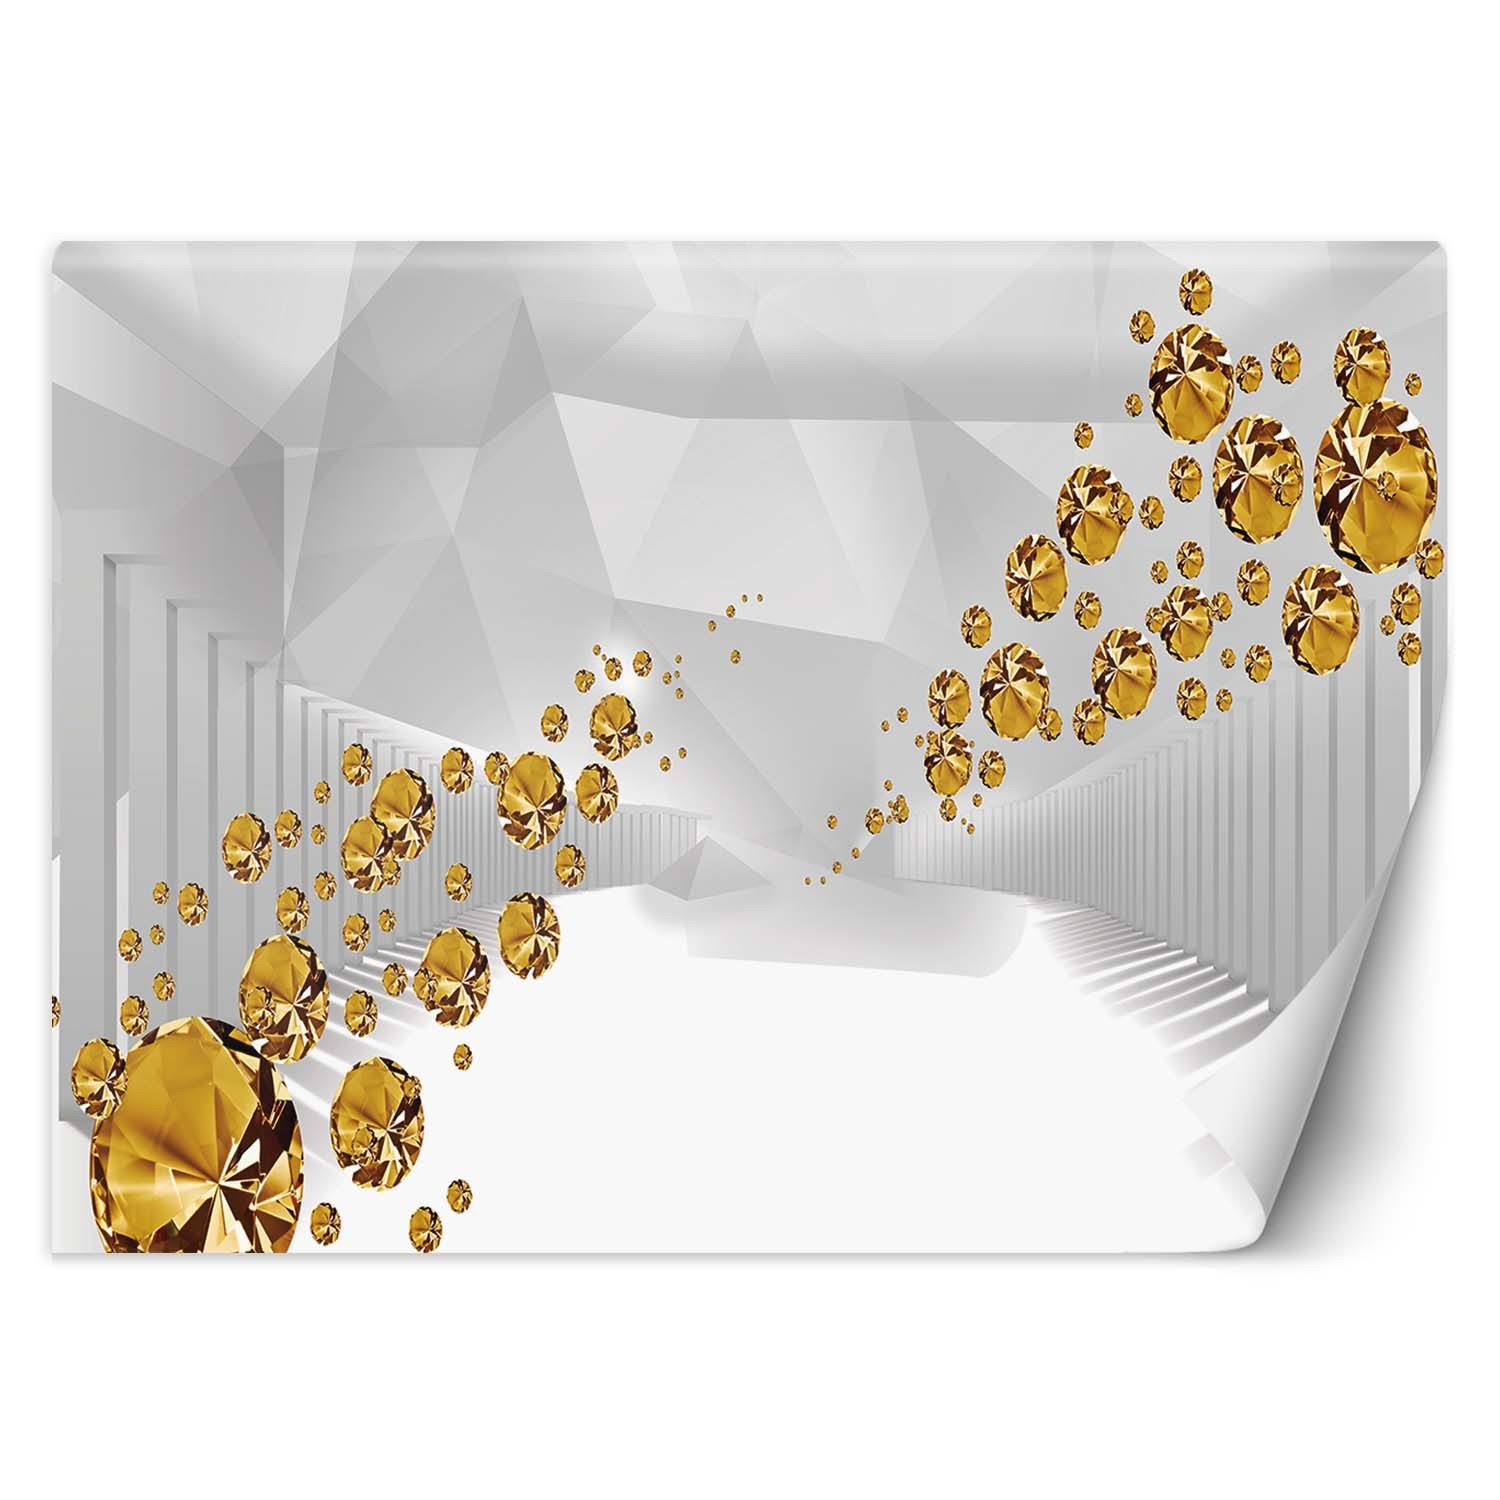 Trend24 – Behang – Gouden Stenen In Een Abstracte Tunnel – Behangpapier – Fotobehang 3D – Behang Woonkamer – 200x140x2 cm – Incl. behanglijm